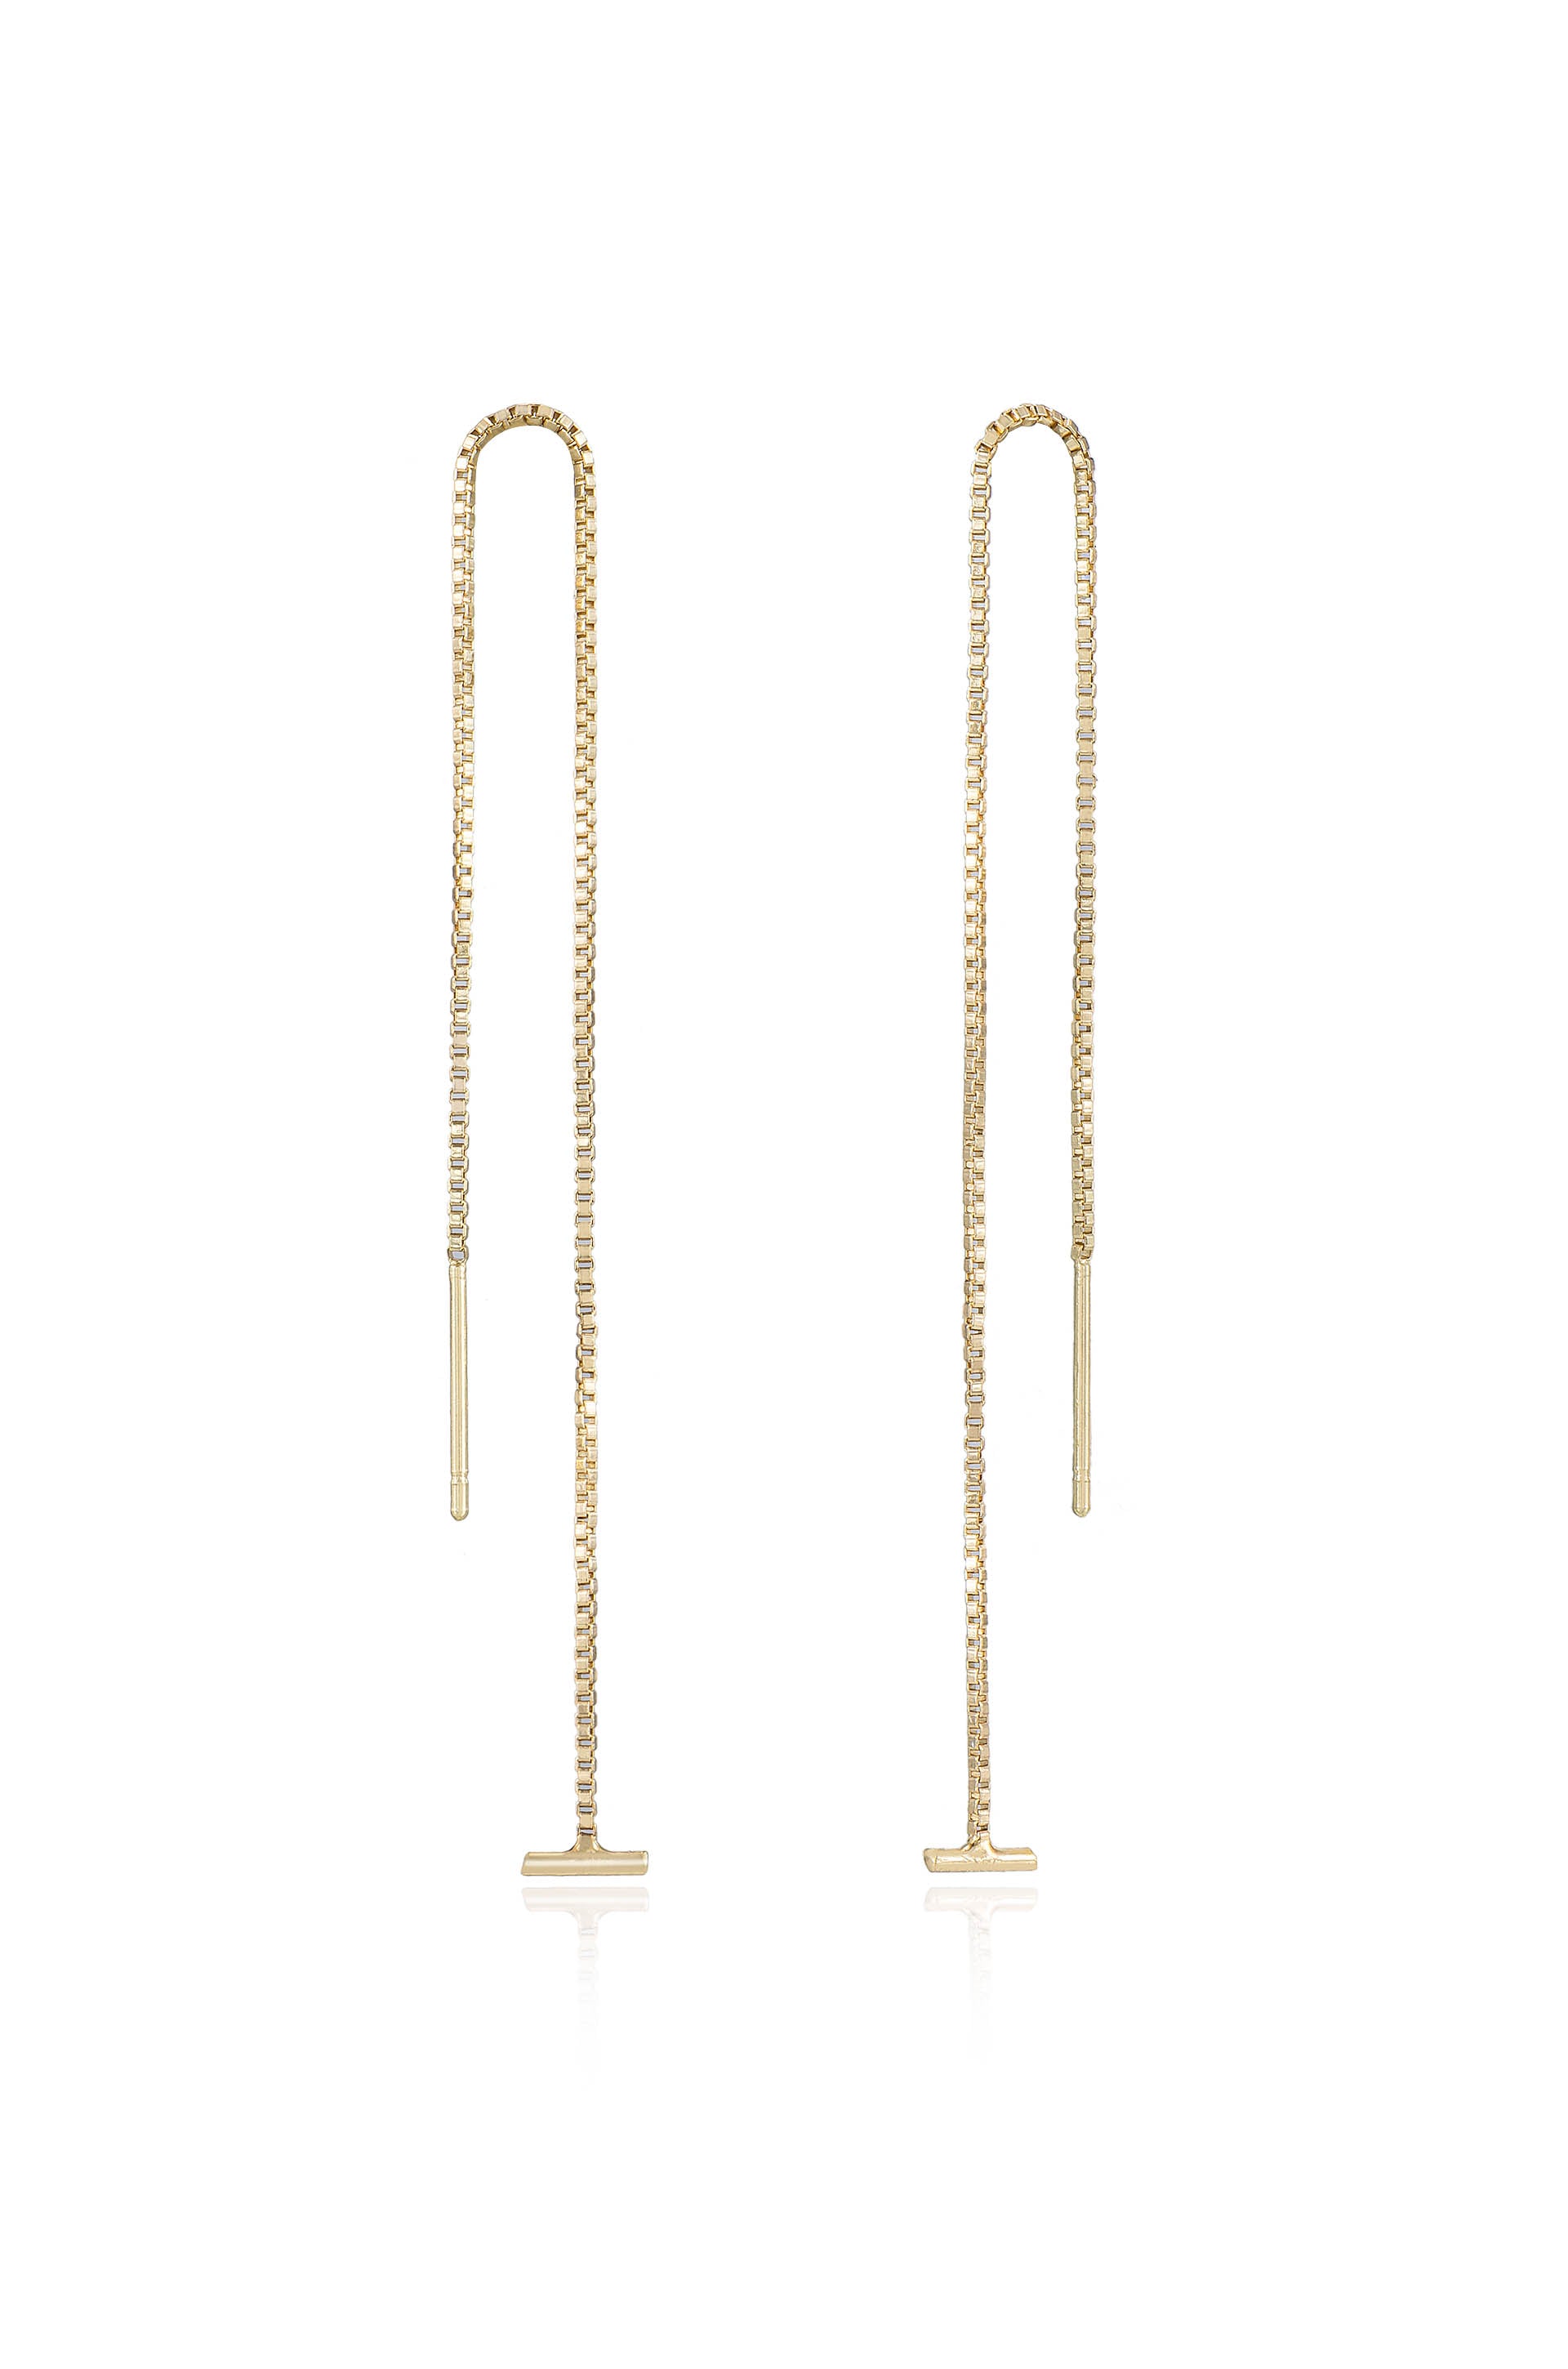 Chic Gold Earrings - Gold Threader Earrings - Threader Earrings